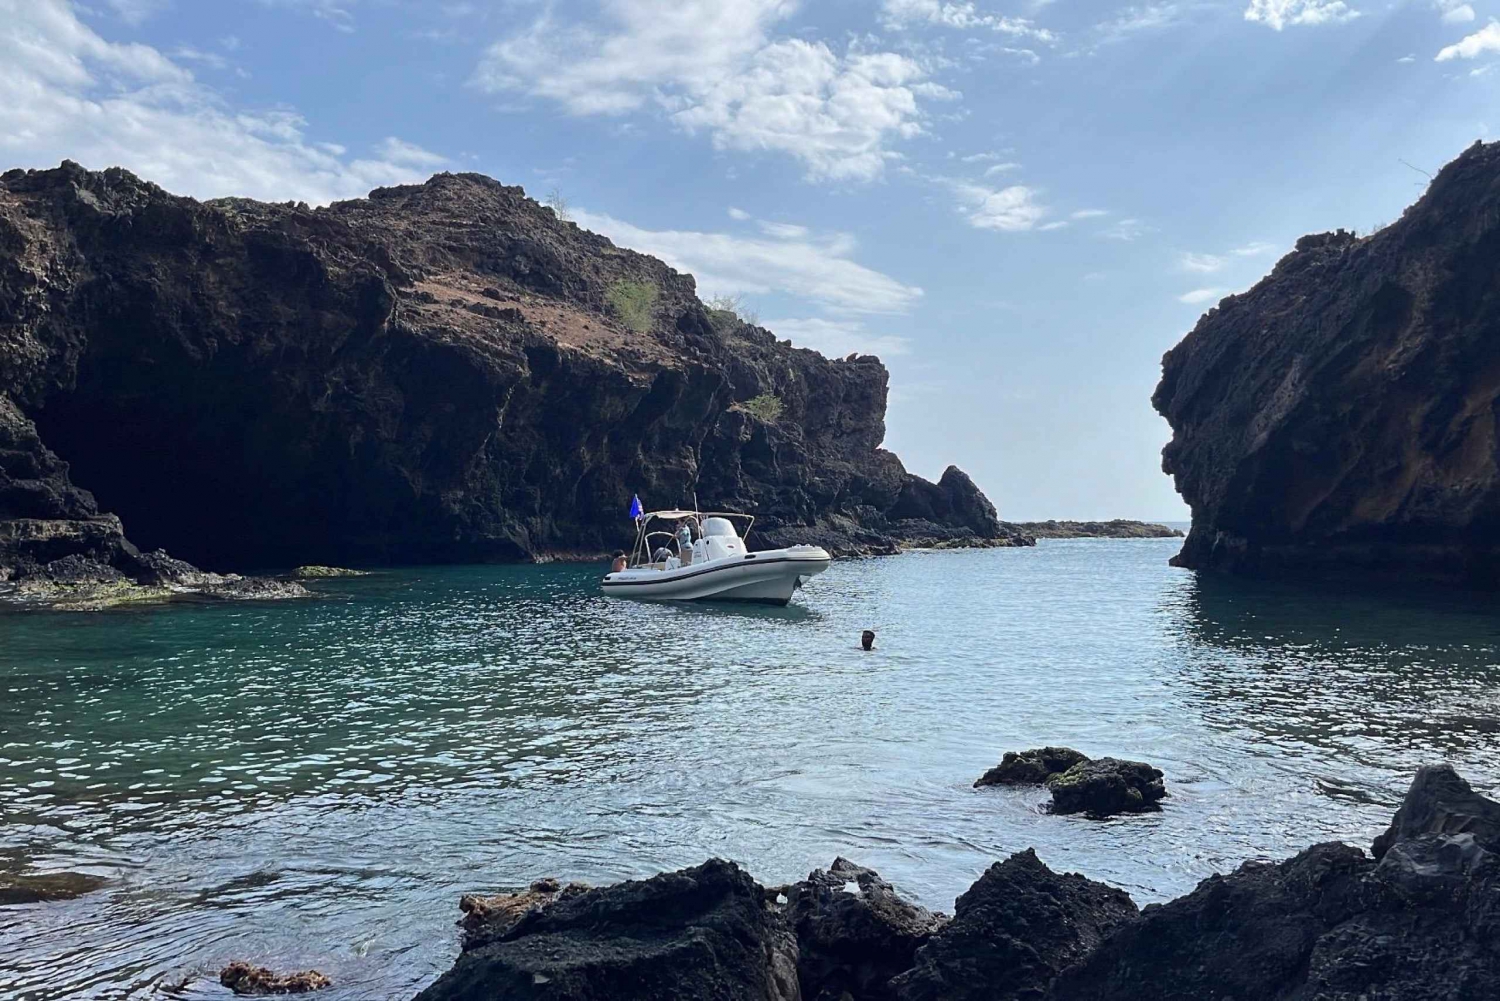 Tarrafal: Bootstour zu den Höhlen von Aguas Belas mit Schnorcheln